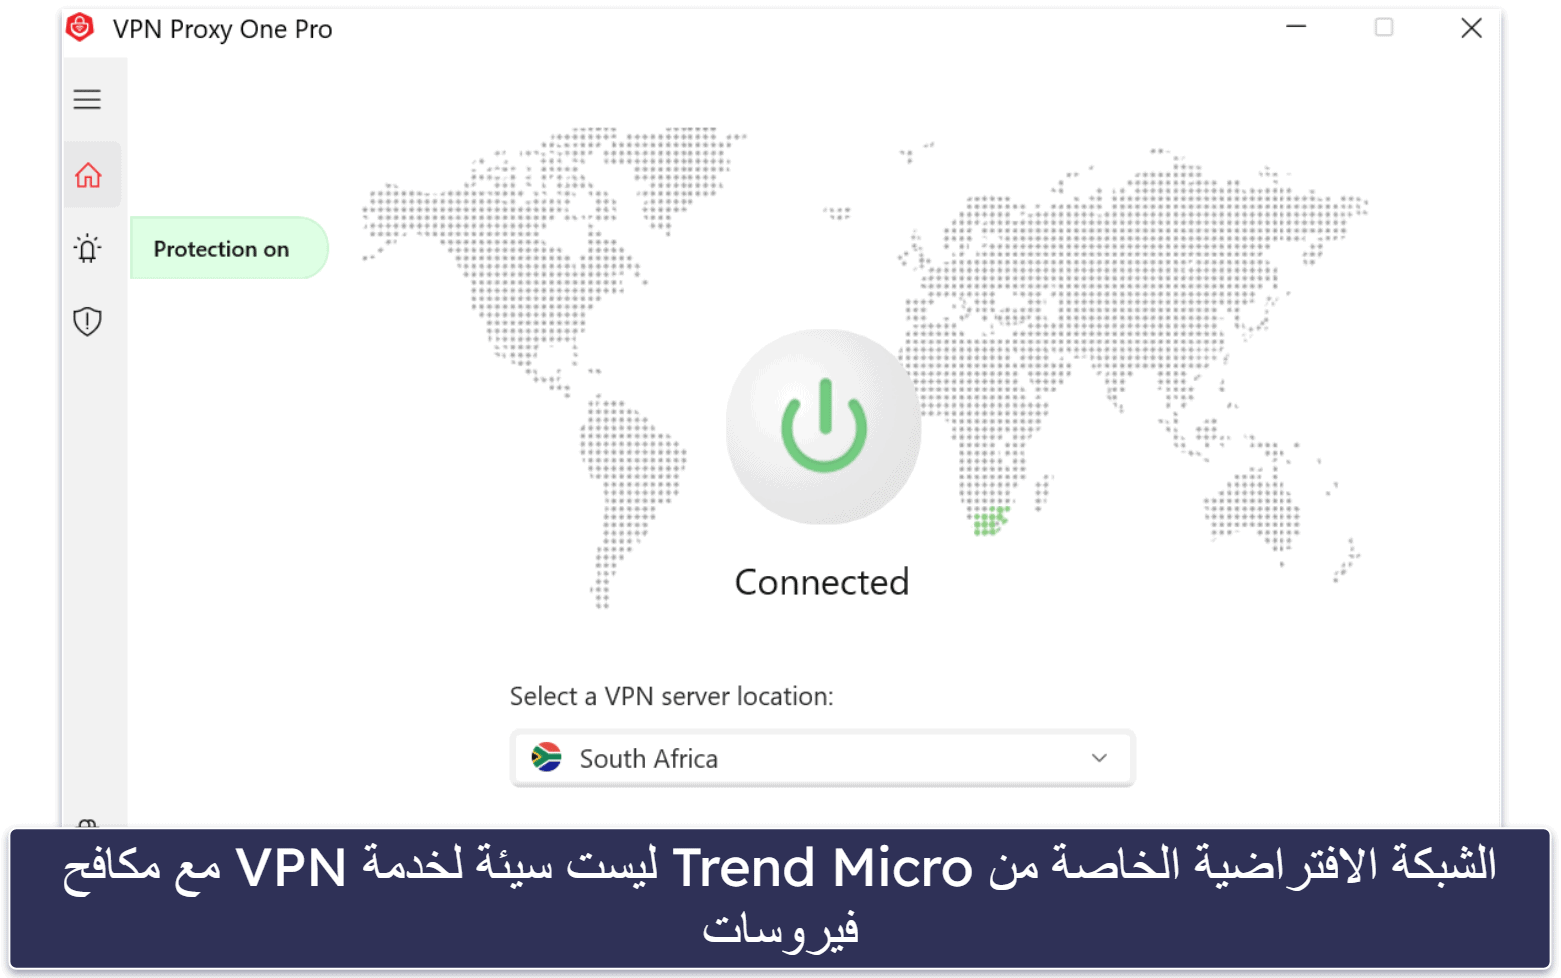 9. Trend Micro – الأفضل للتصفح الآمن والمعاملات البنكية على الإنترنت